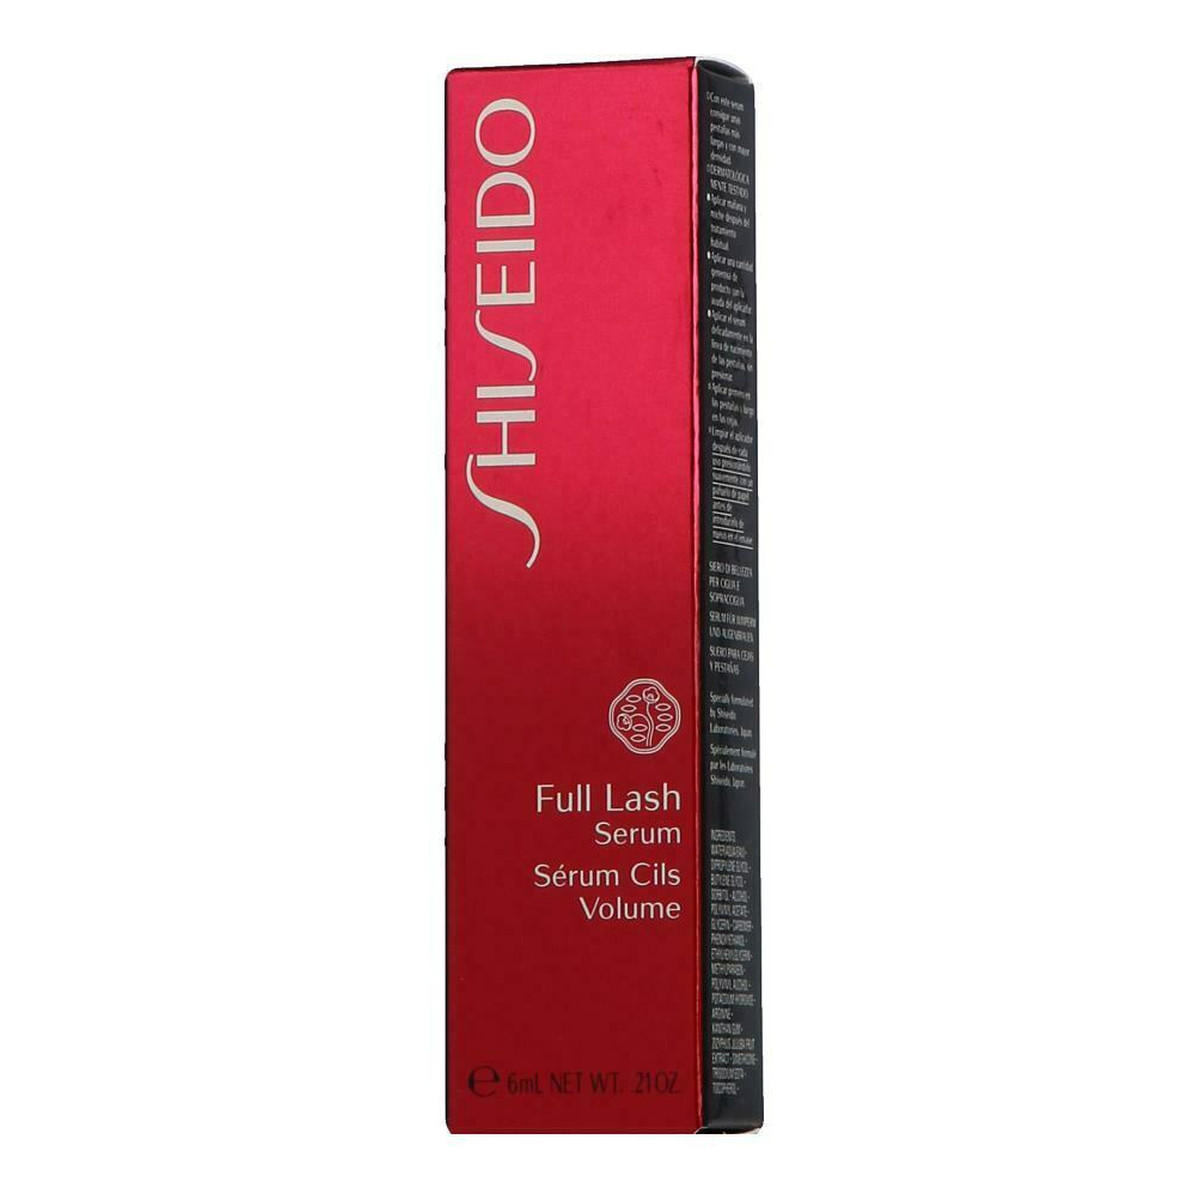 Shiseido Full Lash odżywcze serum do rzęs 6ml